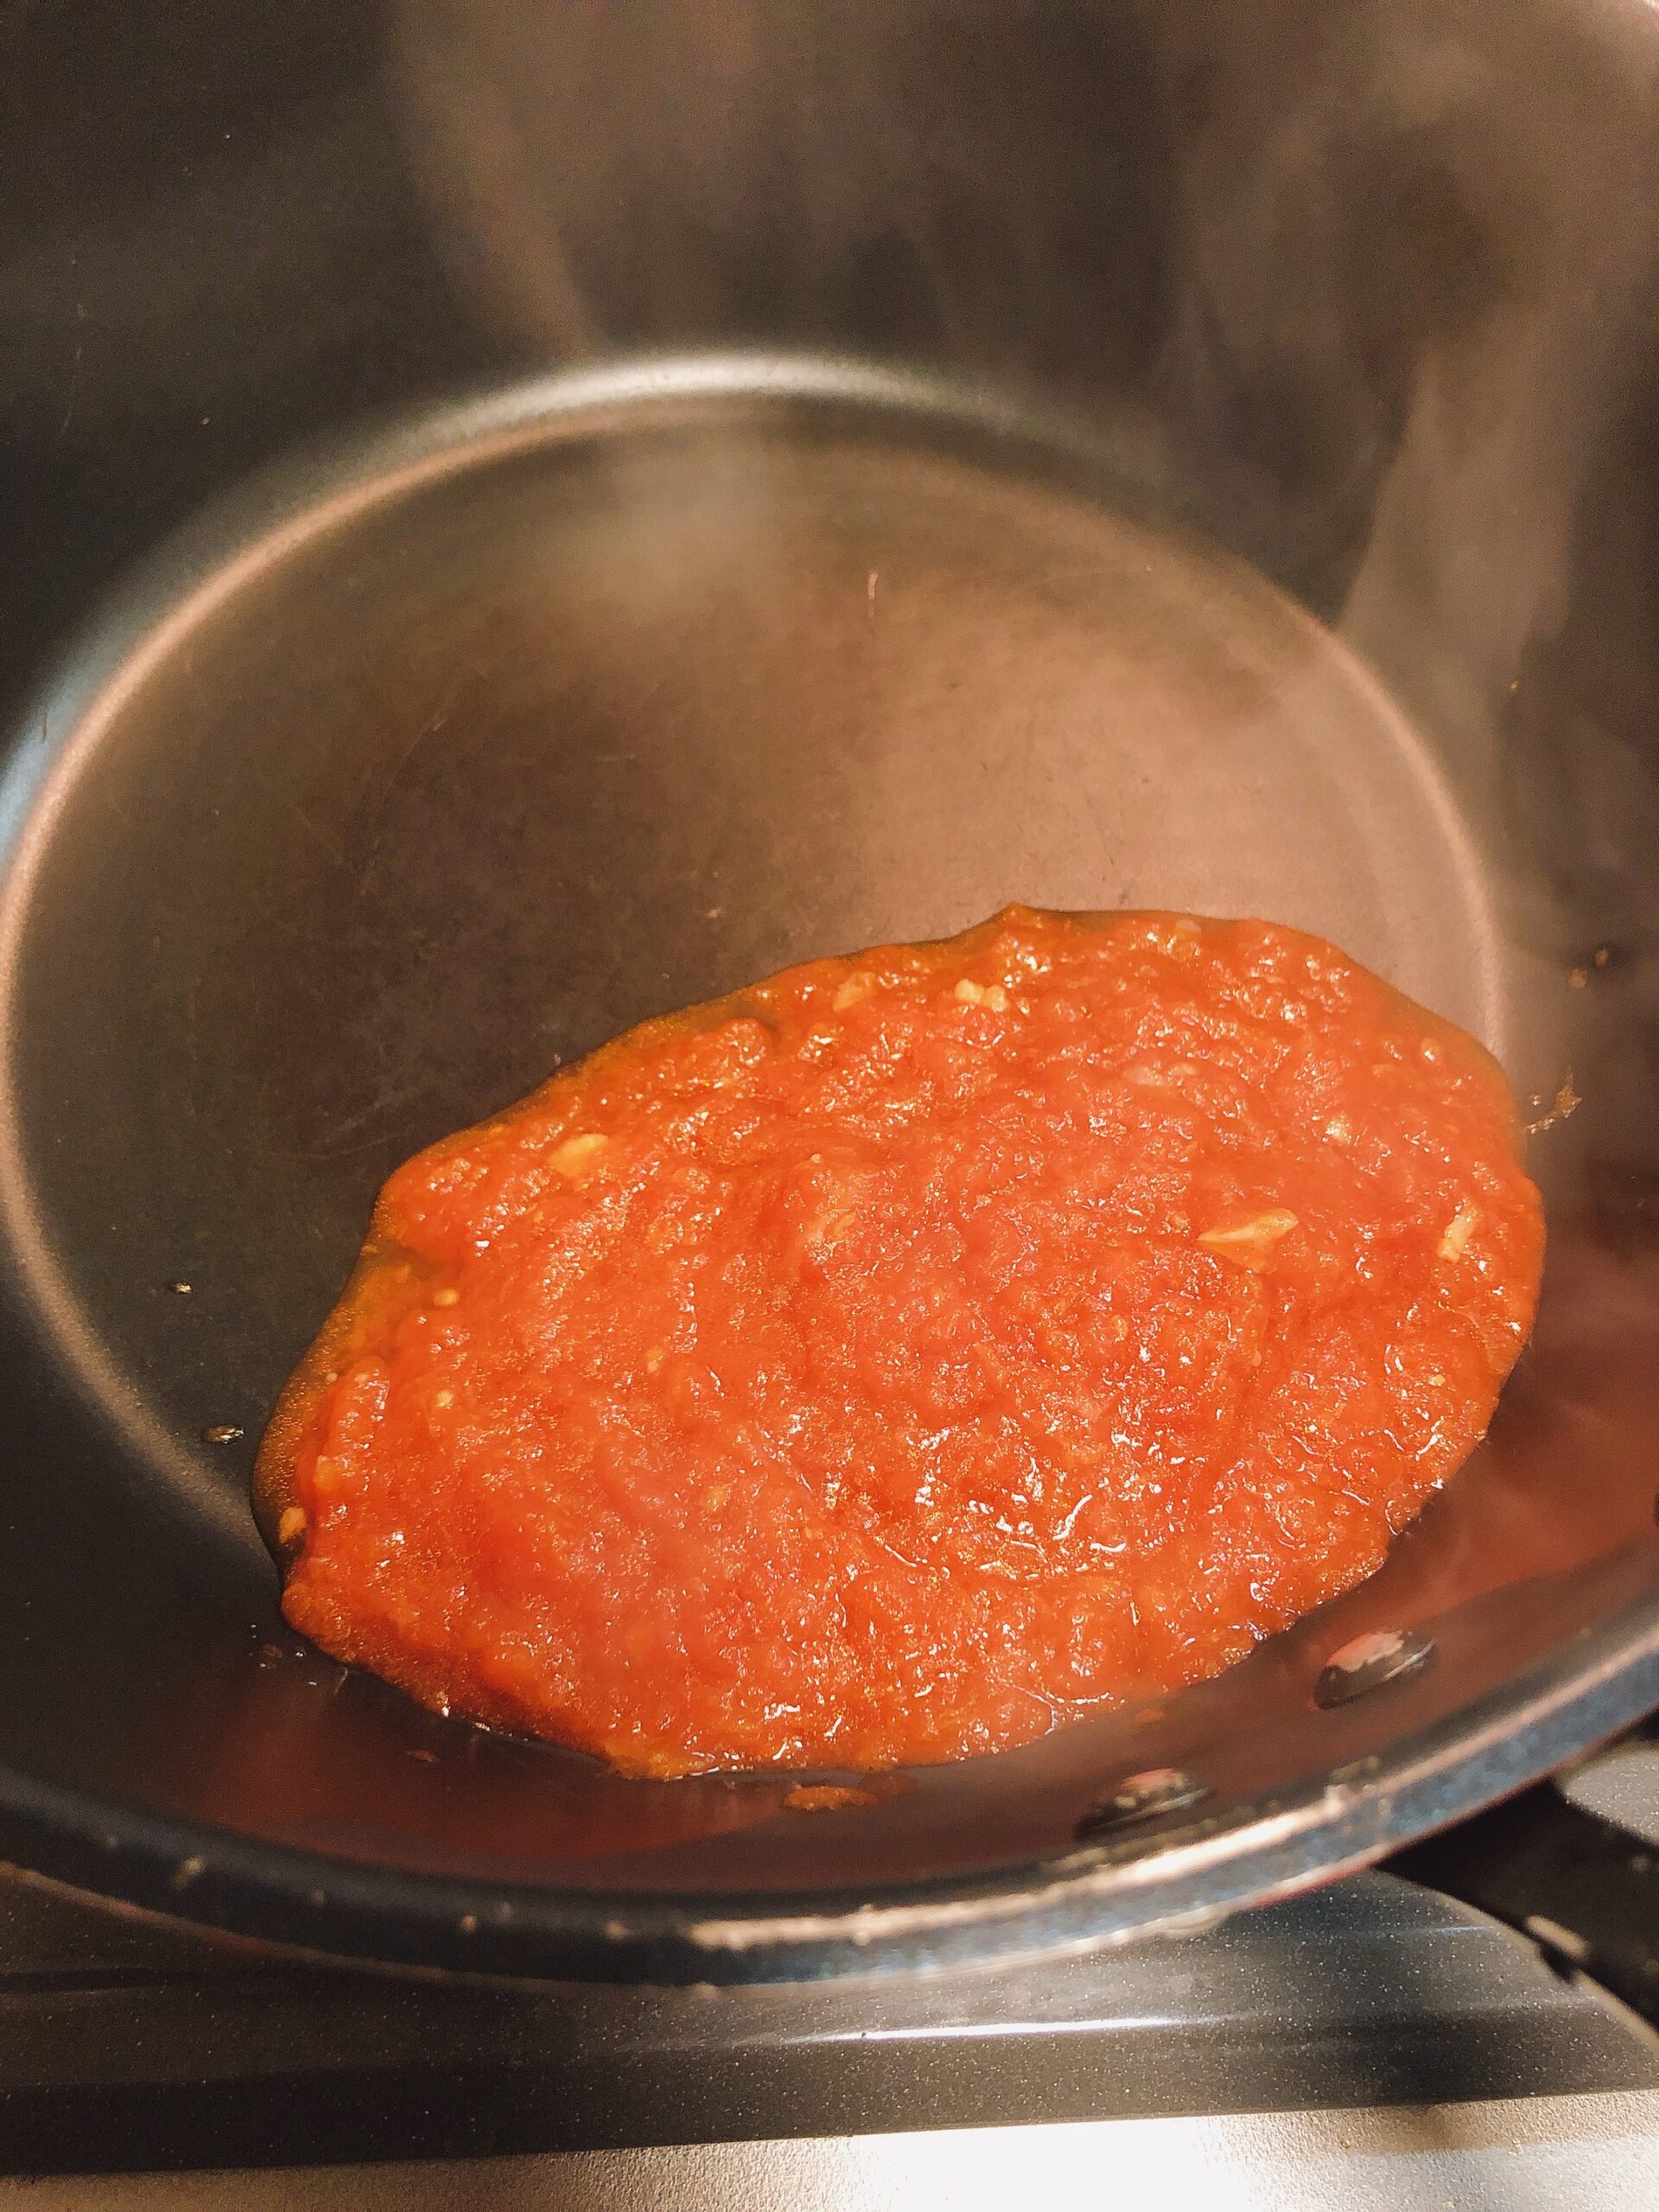 フライパンに作ったトマトソースを適量入れた状態の画像です